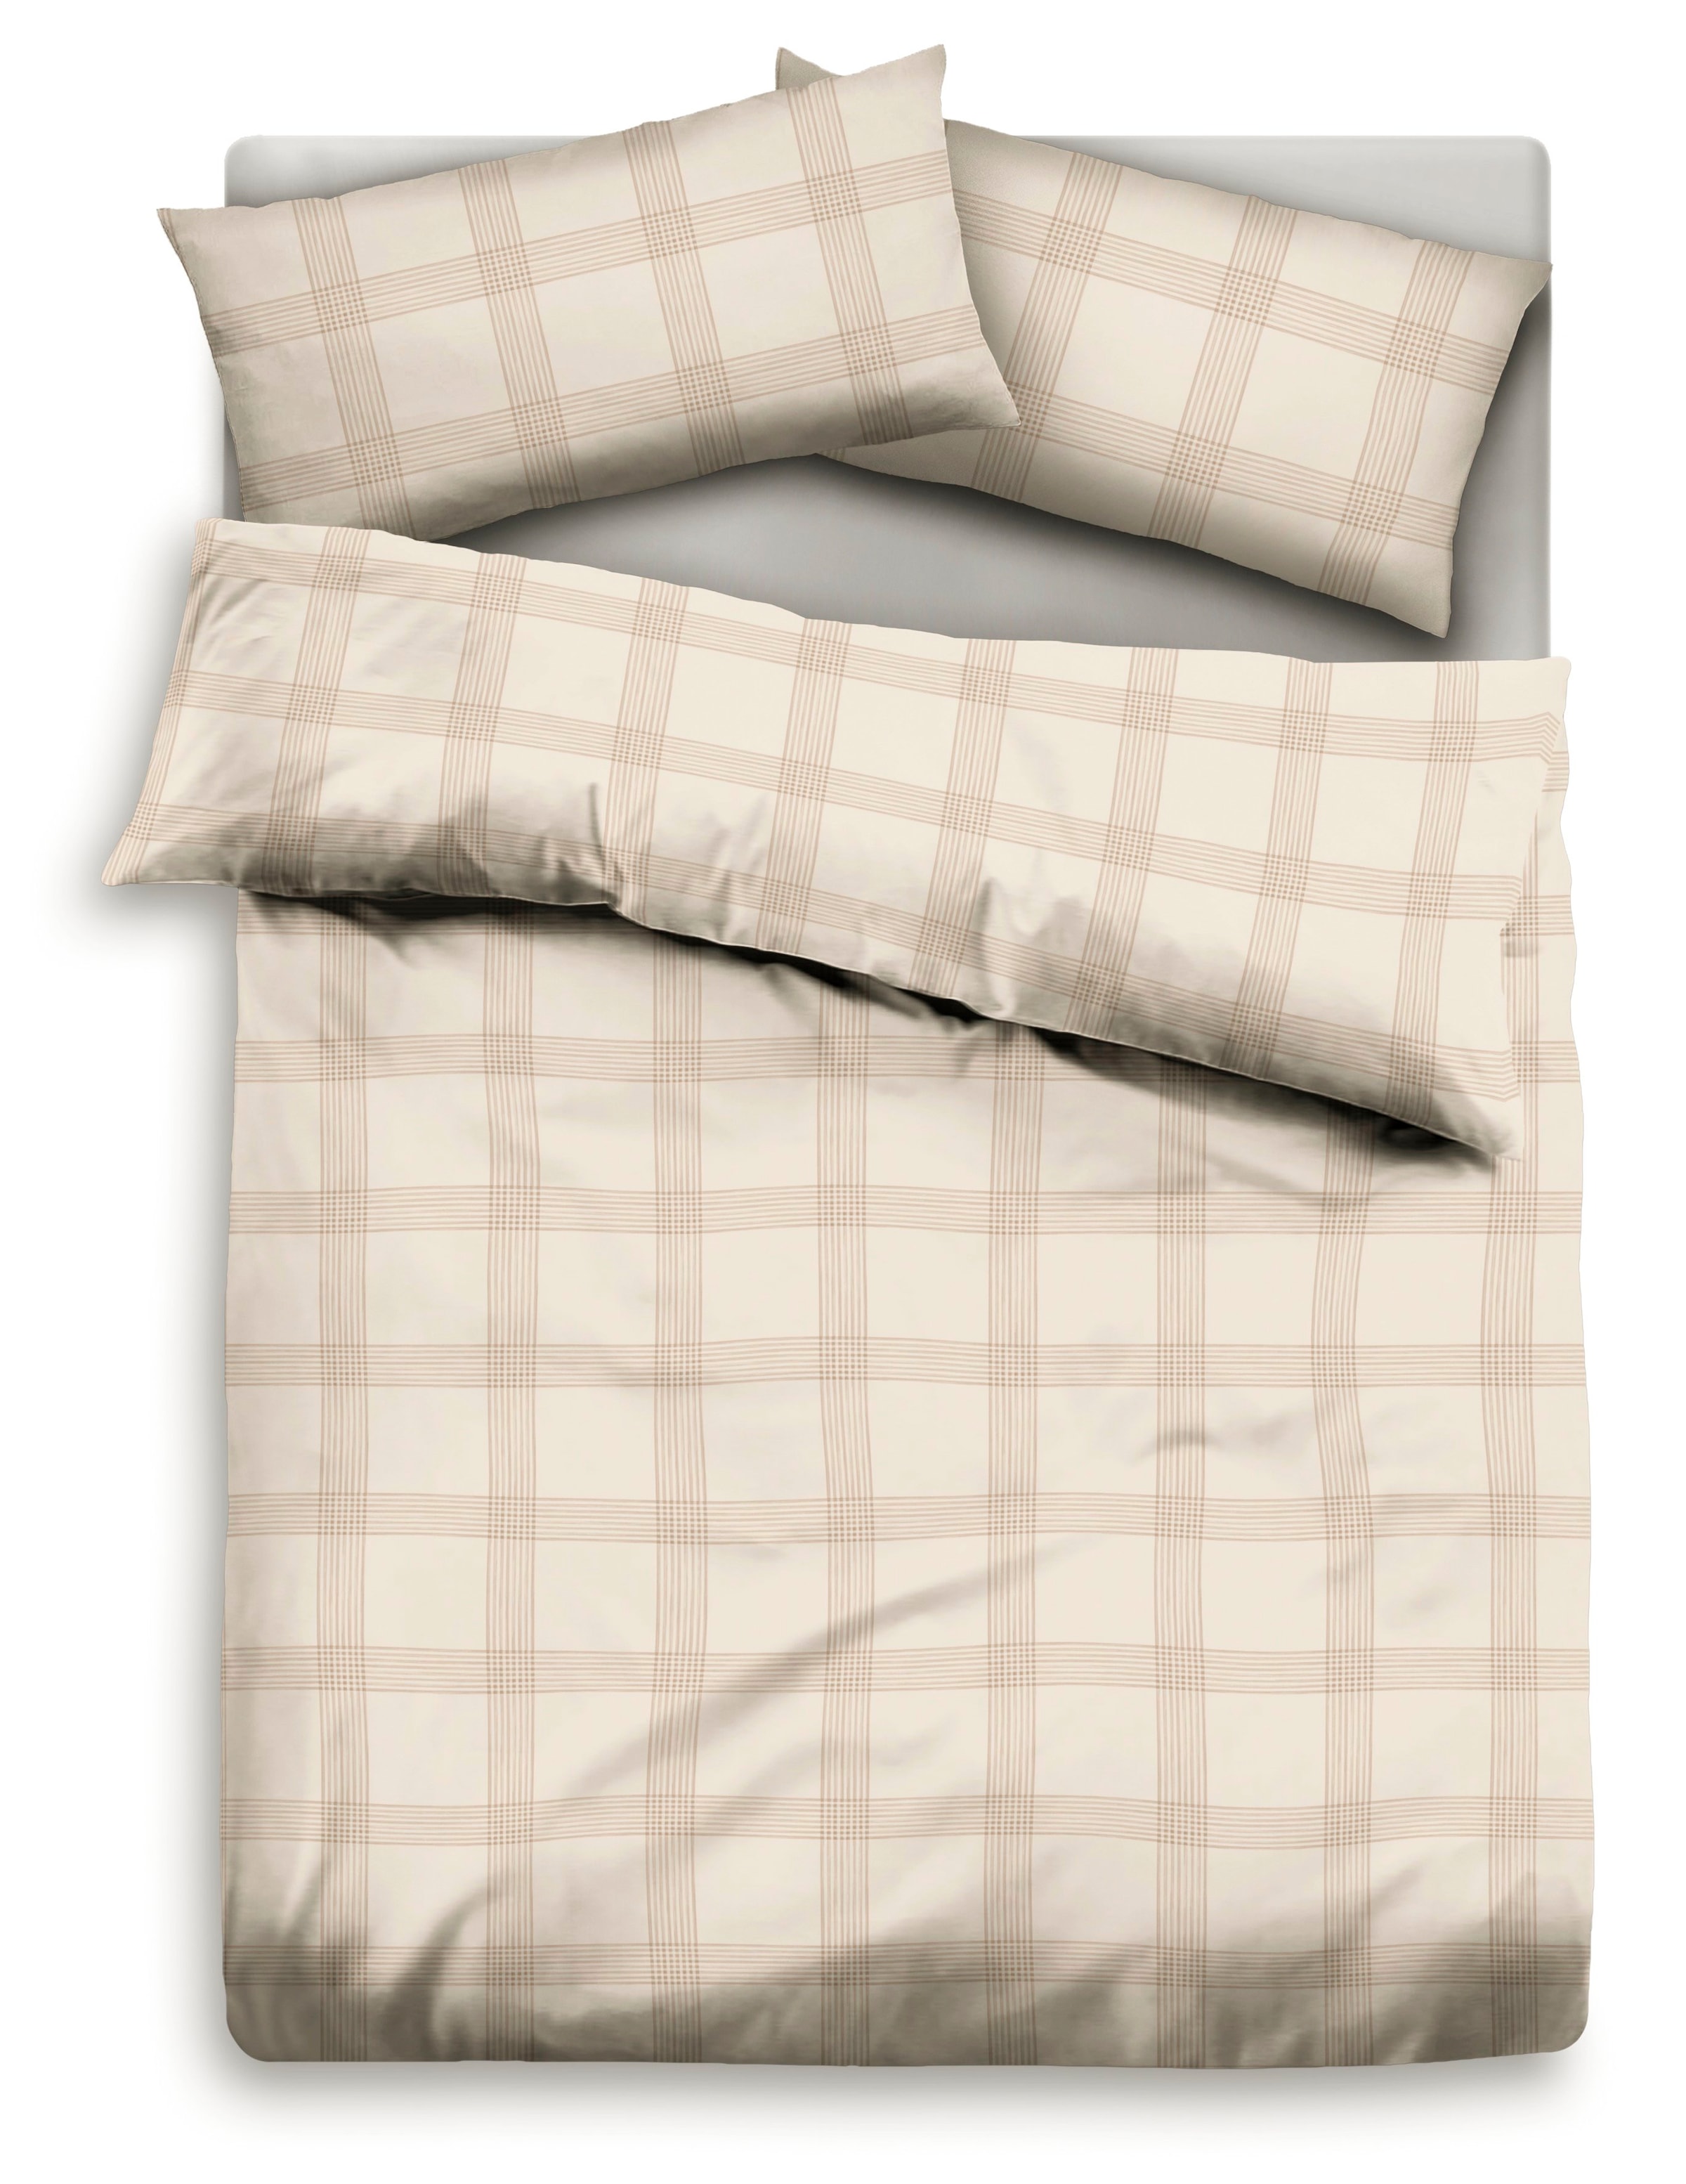 GOODproduct Bettwäsche »Check in Gr. 135x200, 155x220 oder 200x200 cm«, (2 tlg.), Bettwäsche aus Bio-Baumwolle, nachhaltige Bettwäsche im Karo-Design